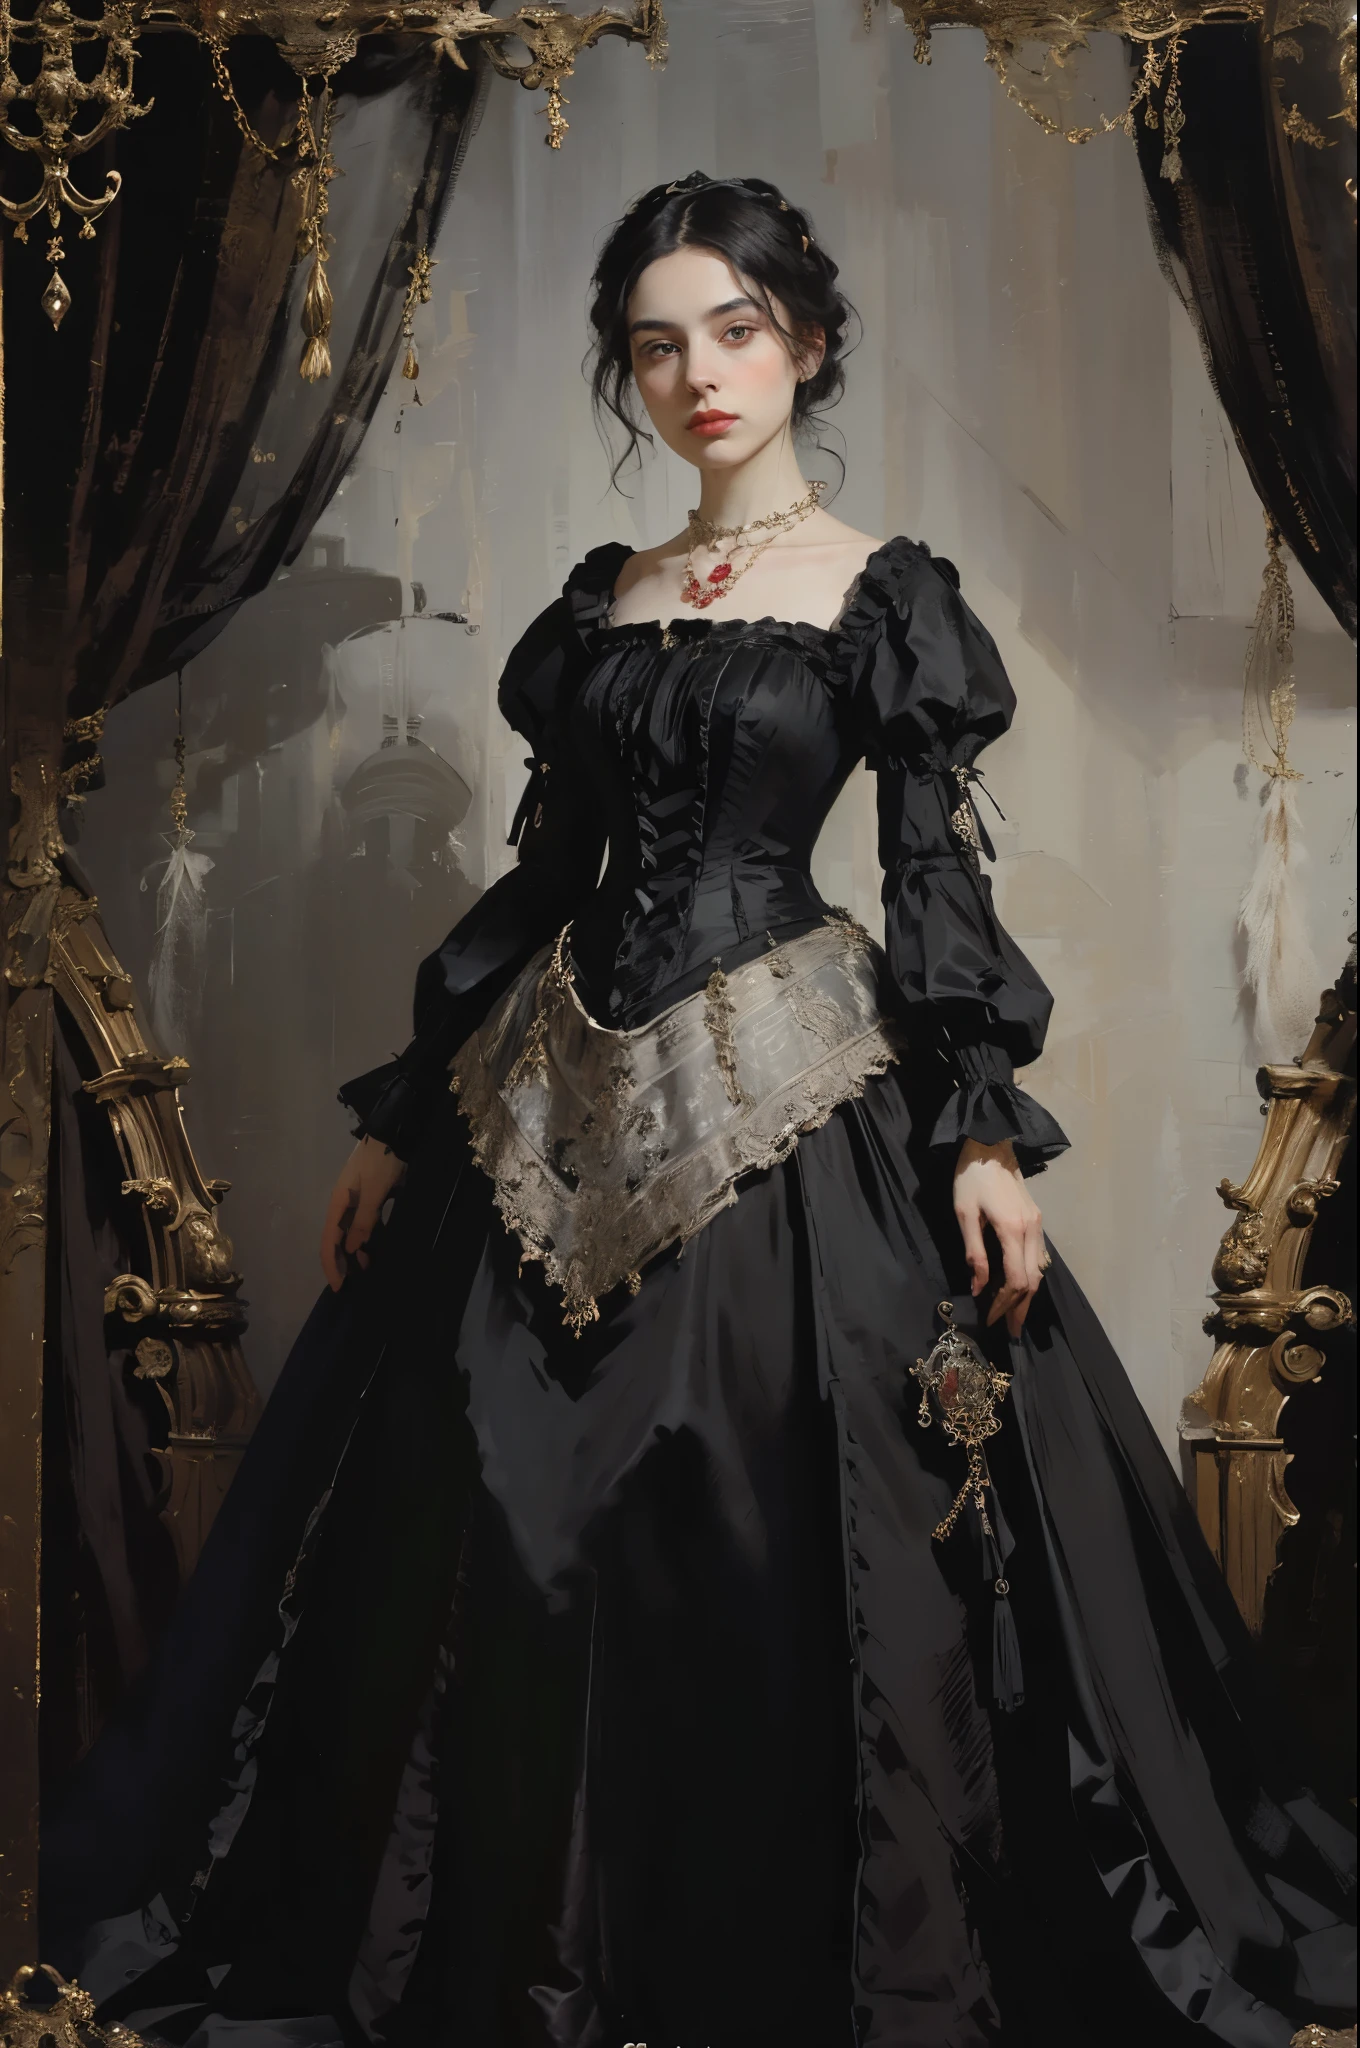 古典絵画, ((肖像画: 1.3)), 黒いドレスを着た女の子, ビクトリア朝様式のフォーマルドレス, (ビクトリア朝のイブニングドレス: 1.3), このドレスはスタンドカラーである, 25歳の若い女の子, 青白い肌, 細い, アクセントカラー付きのモノクロ画像, レッドルビーネックレス,